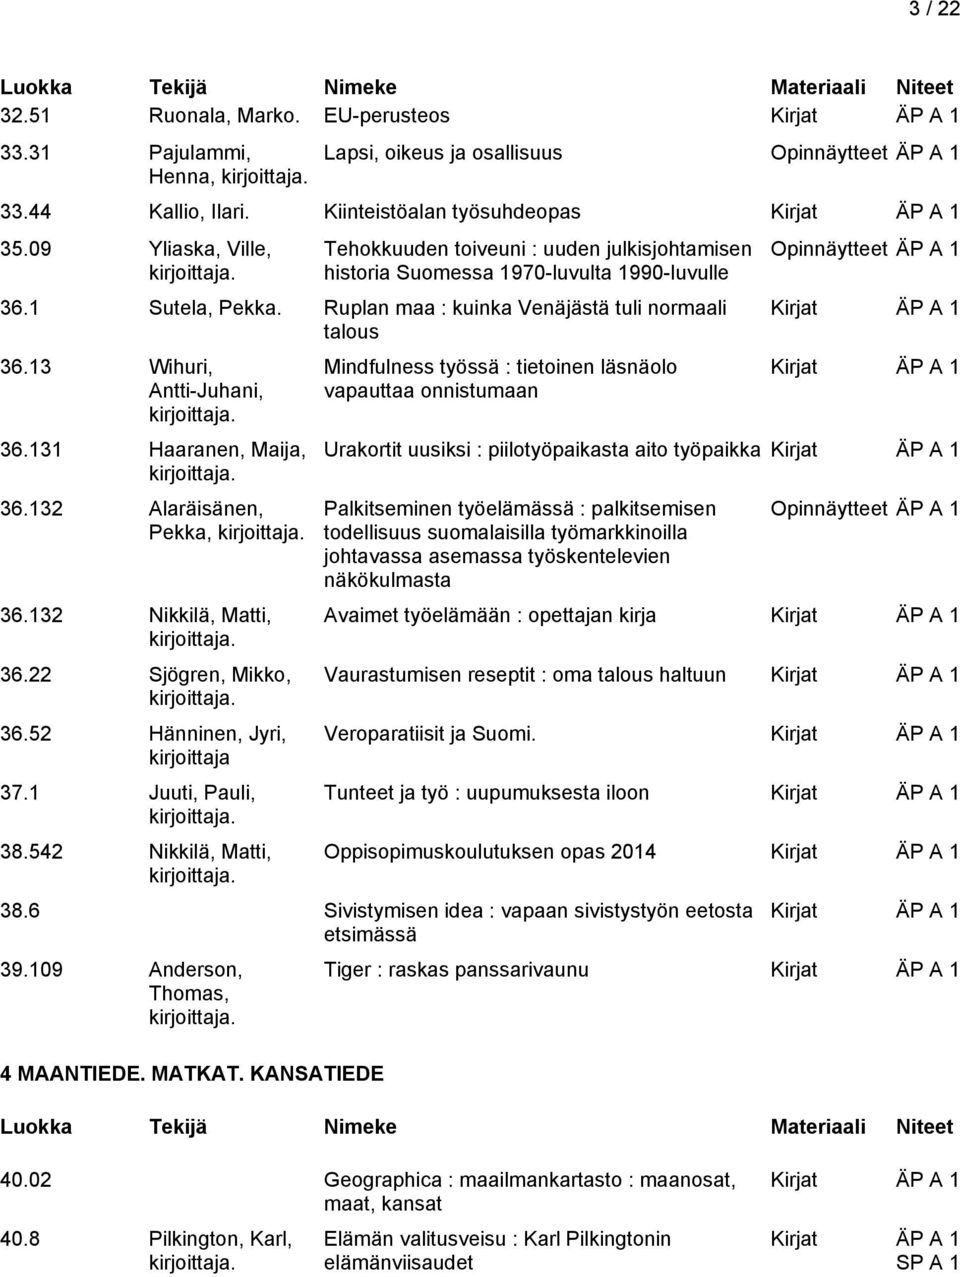 13 Wihuri, Antti-Juhani, 36.131 Haaranen, Maija, 36.132 Alaräisänen, Pekka, 36.132 Nikkilä, Matti, 36.22 Sjögren, Mikko, 36.52 Hänninen, Jyri, kirjoittaja 37.1 Juuti, Pauli, 38.